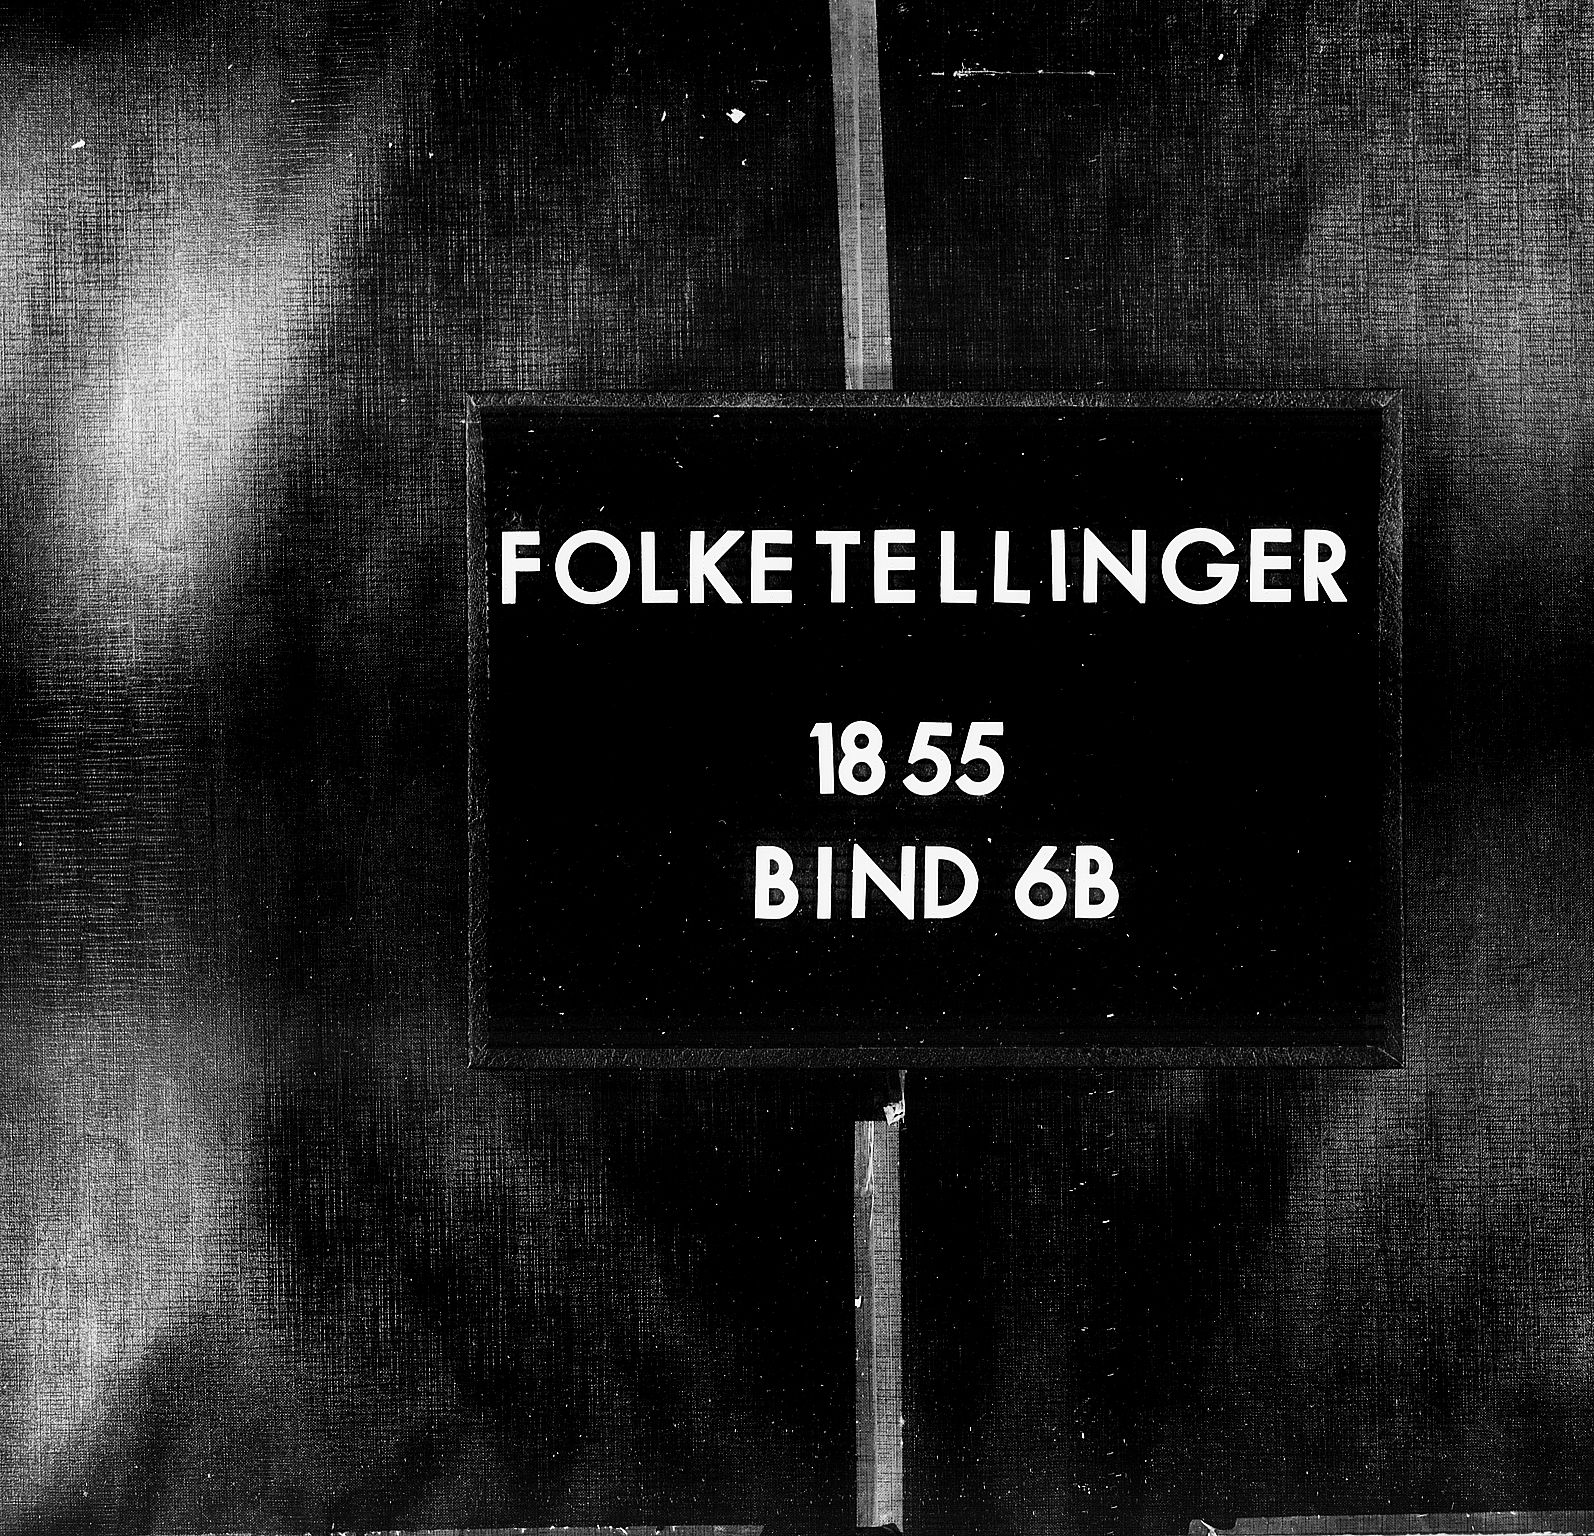 RA, Folketellingen 1855, bind 6B: Nordland amt og Finnmarken amt, 1855